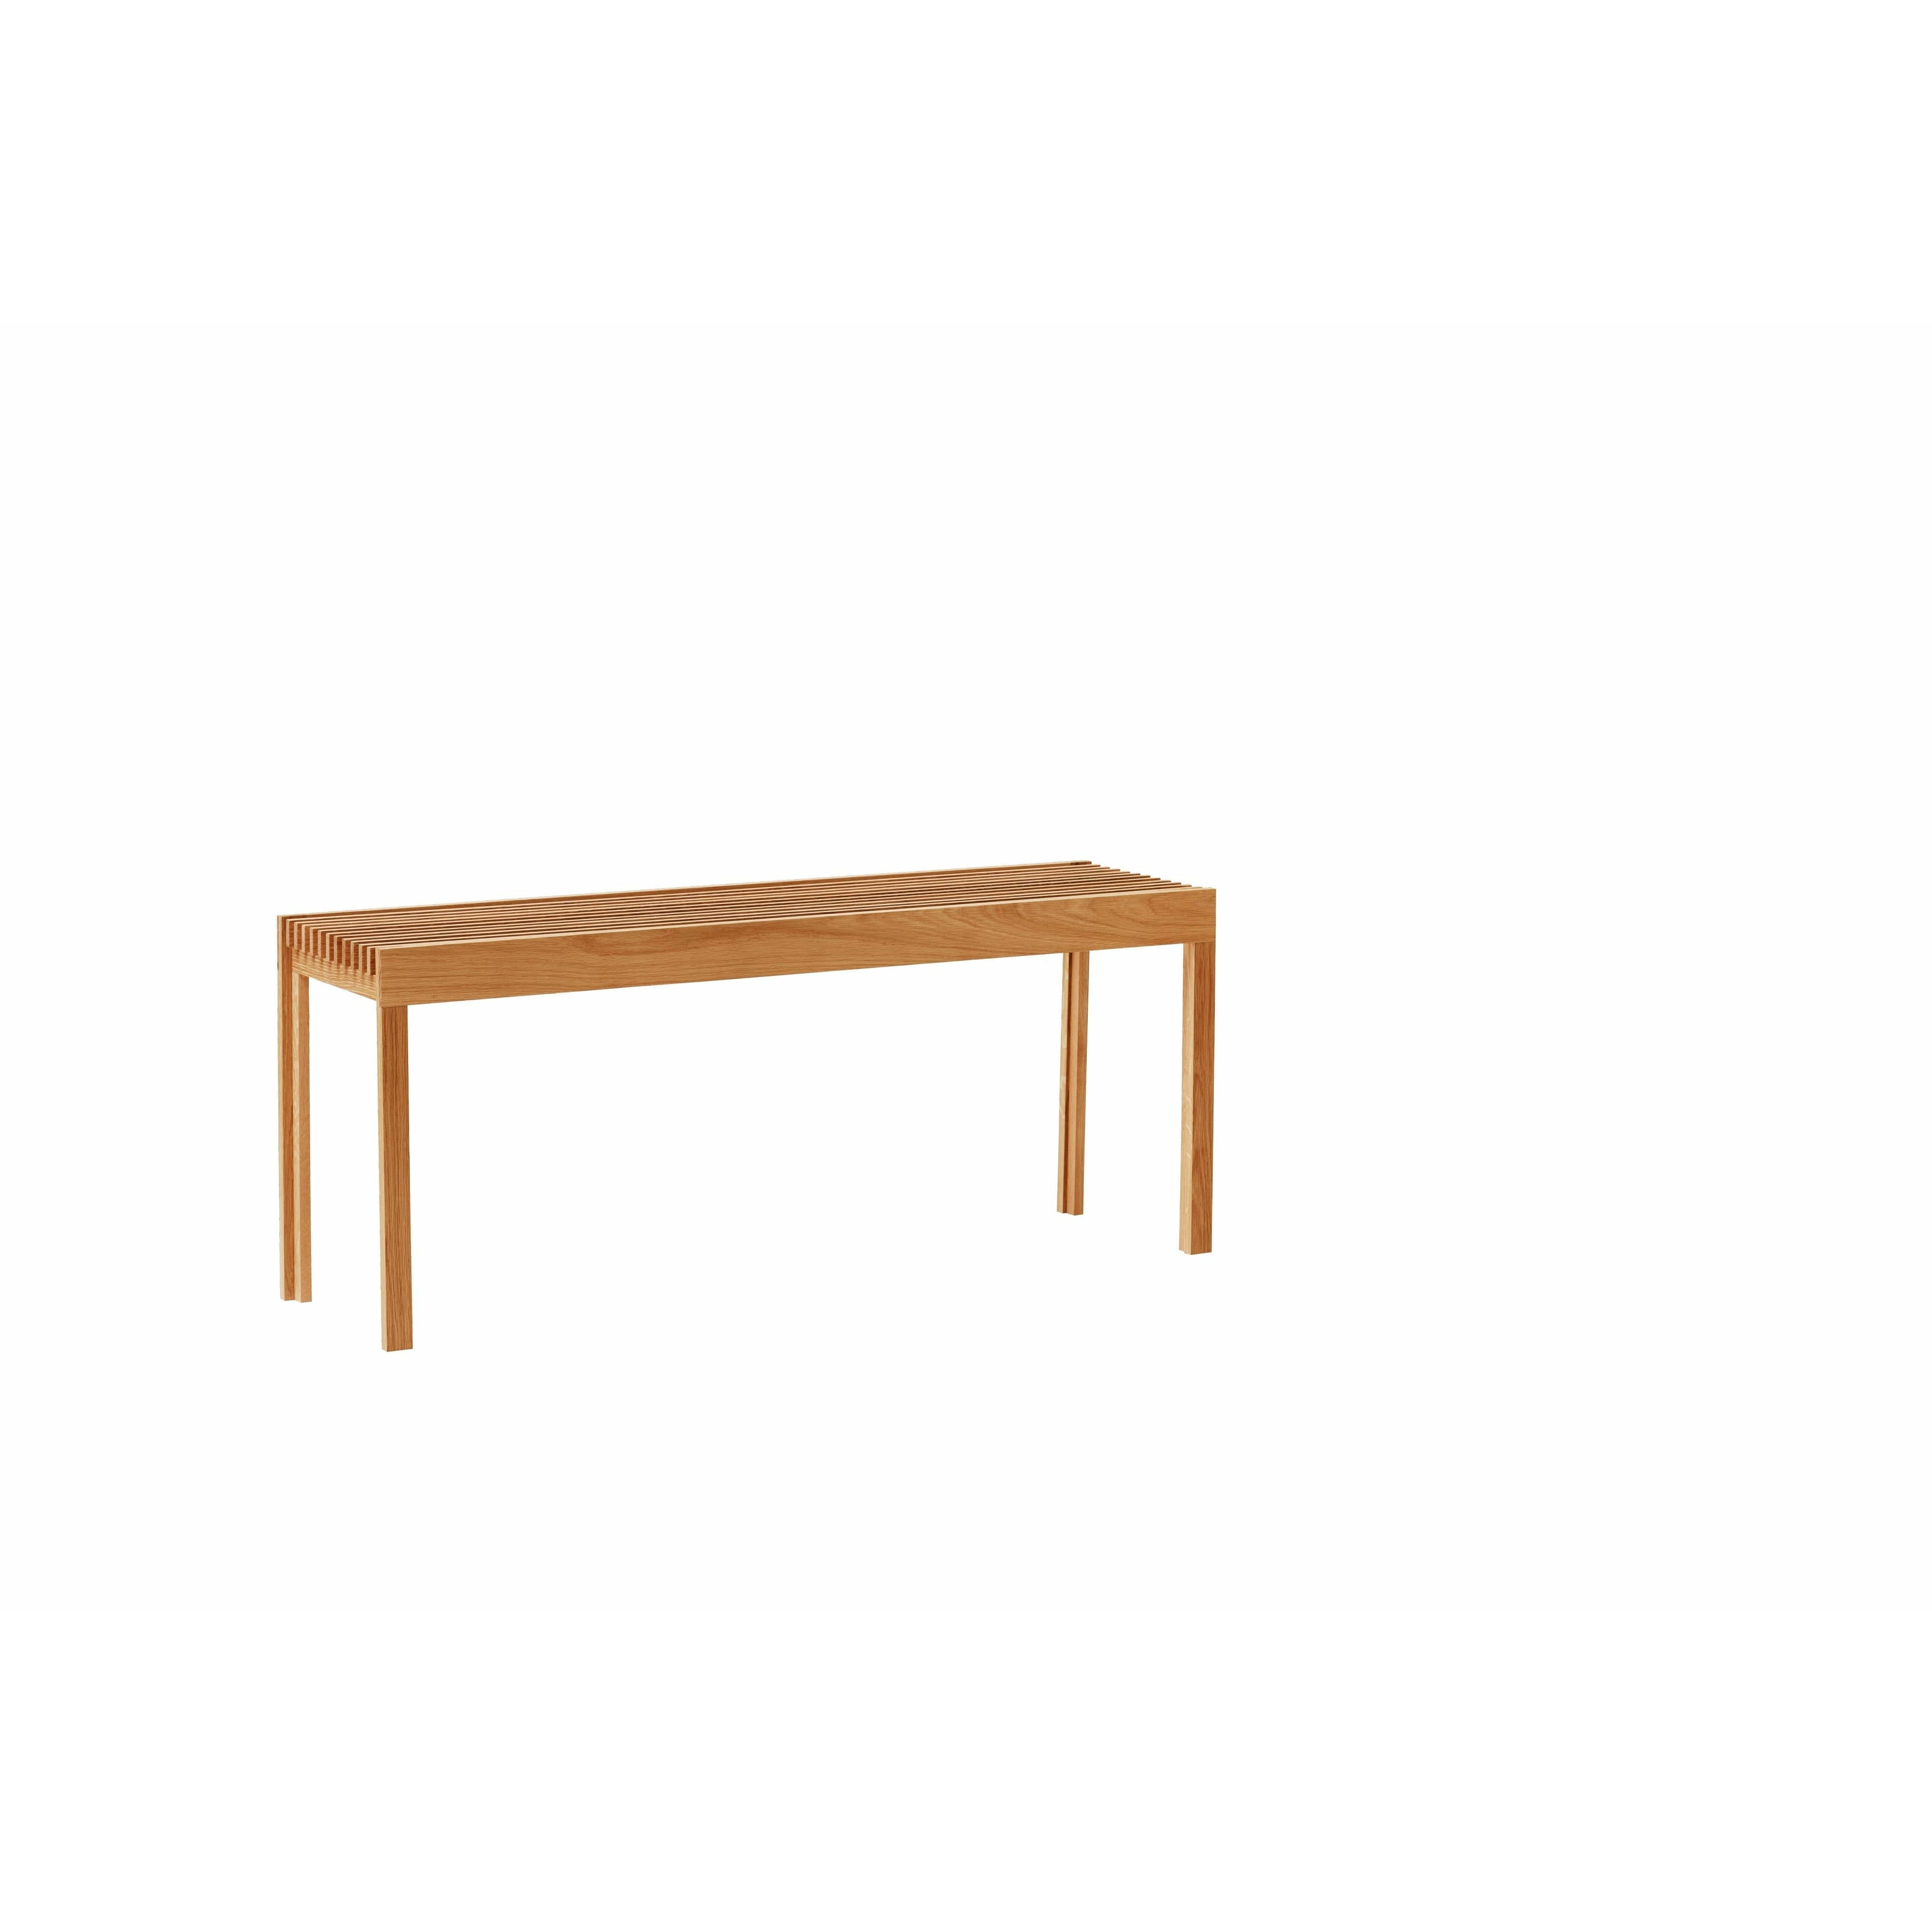 形式和完善轻便的长凳。橡木